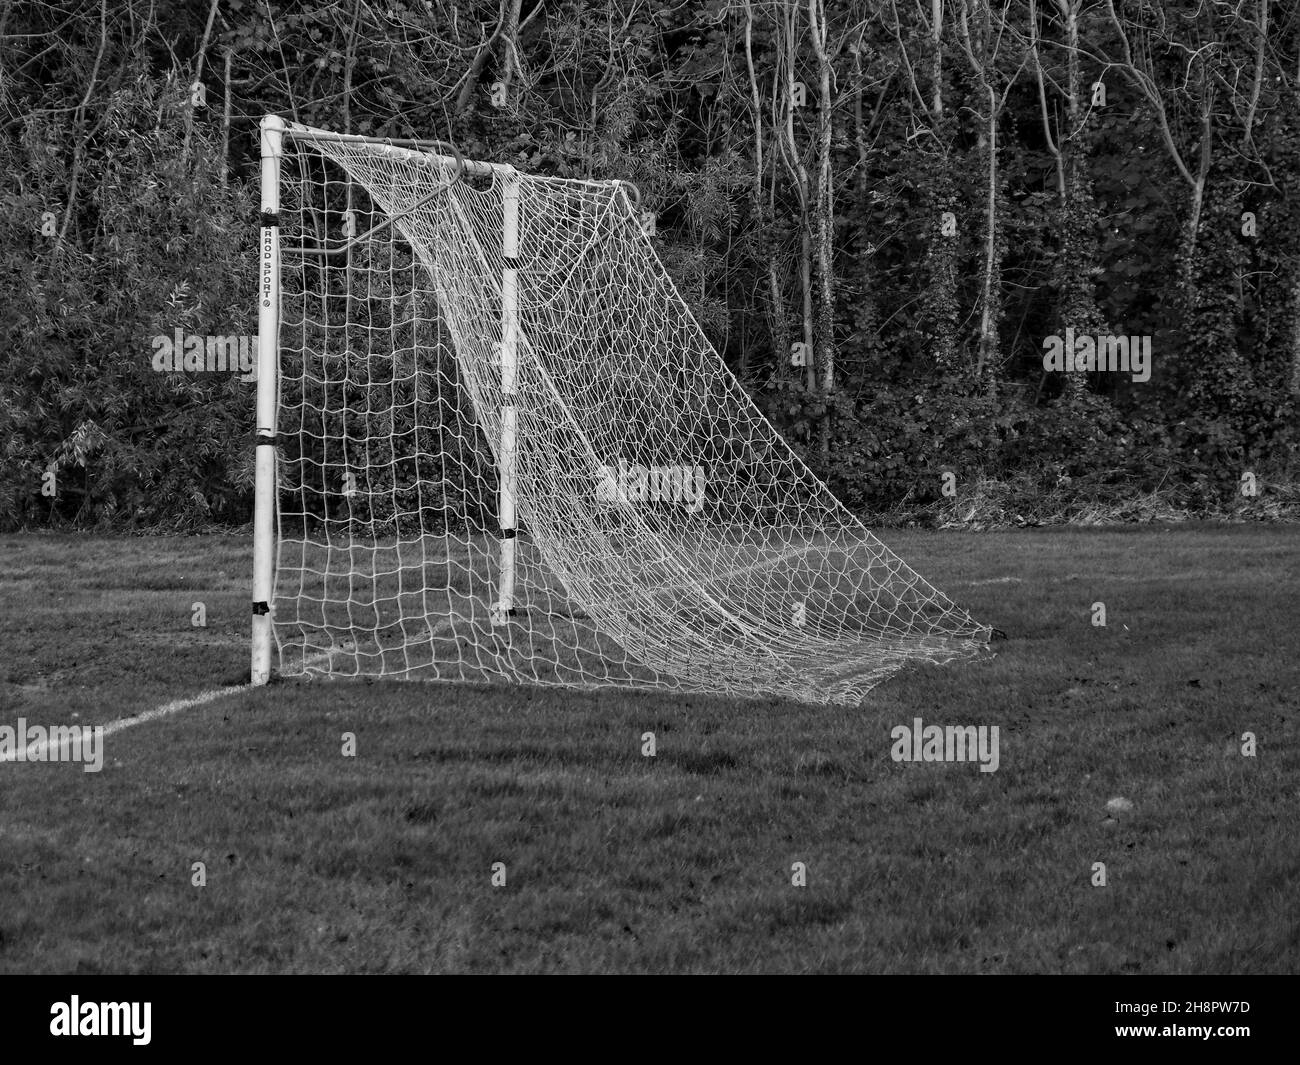 Football nets on goalposts in a Belfast park Stock Photo